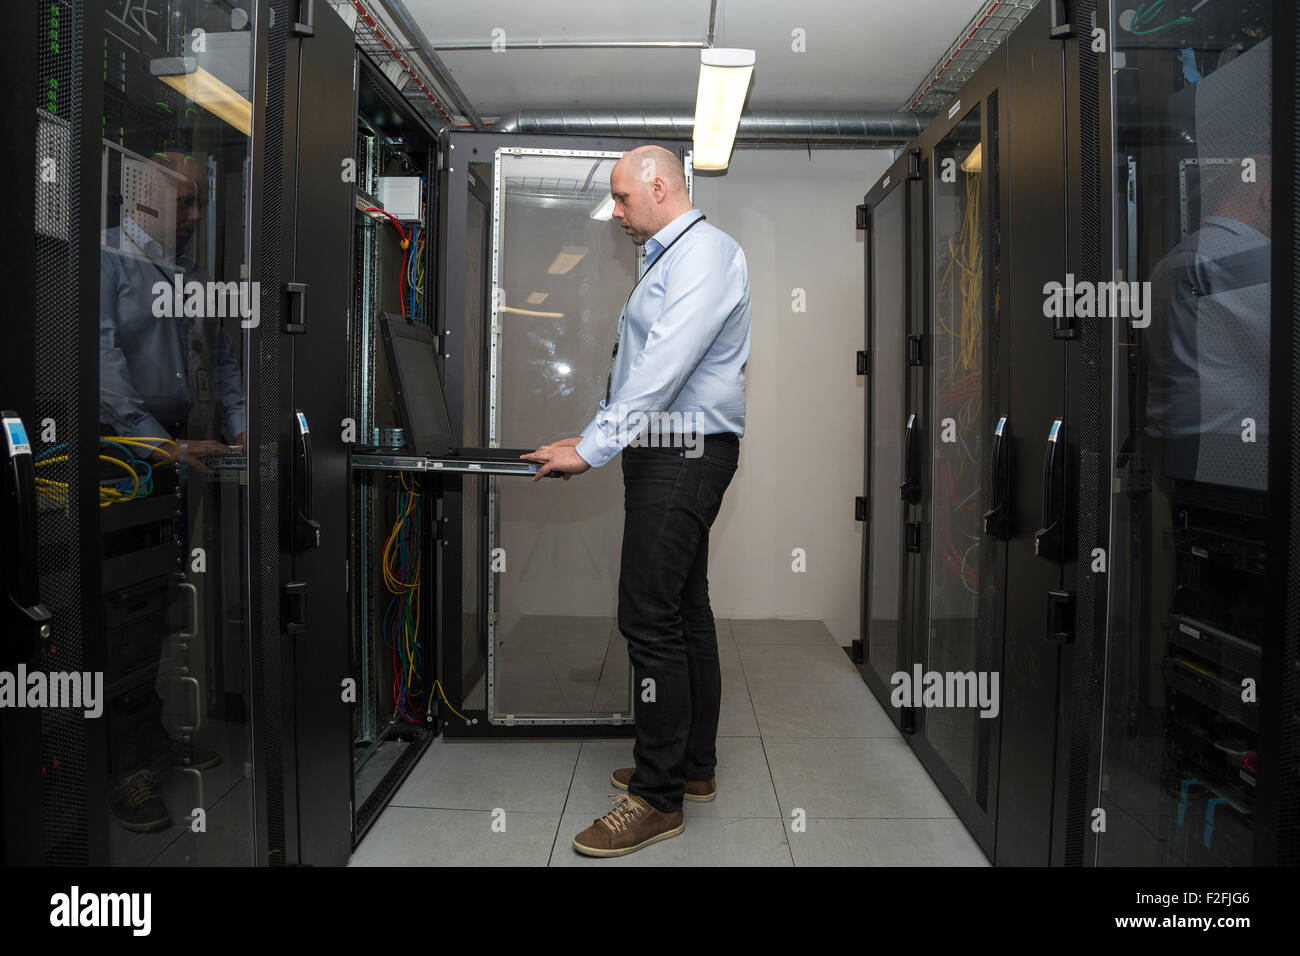 Spécialiste de l'informatique travaillant sur des serveurs dans une salle de serveurs, à la recherche à l'écran de l'ordinateur dans l'une des armoires Banque D'Images